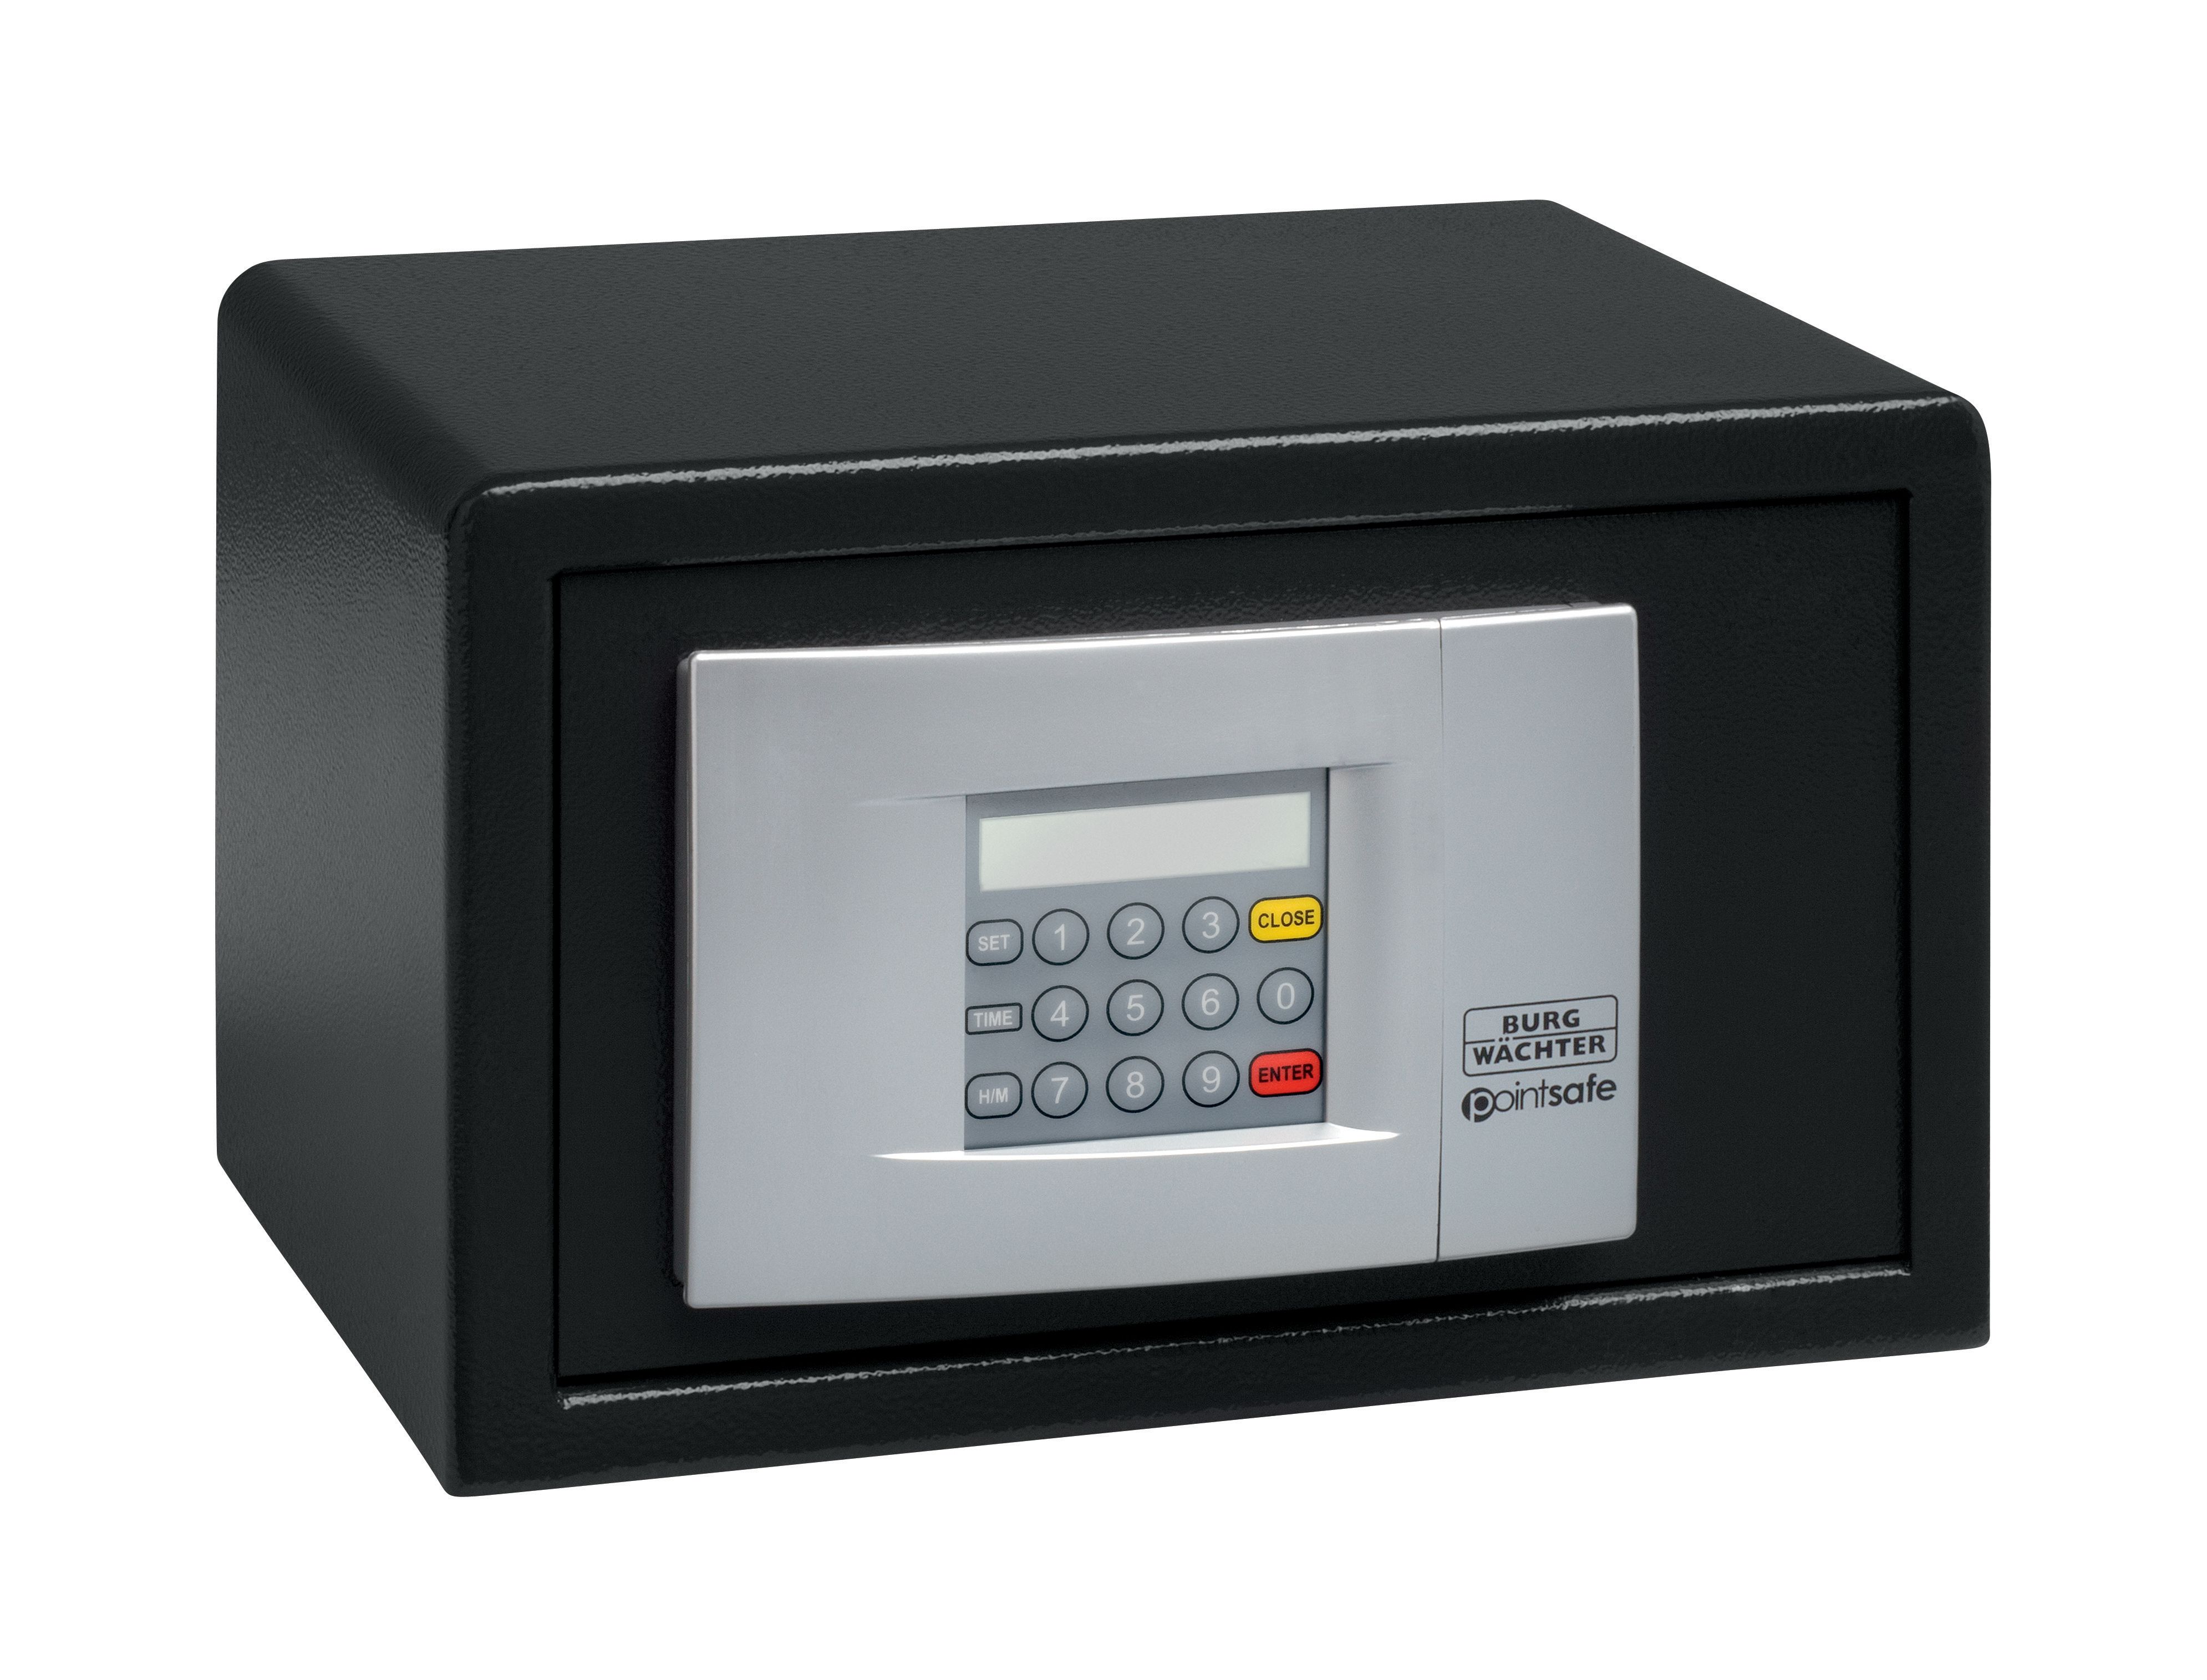 Image of Burg-Wachter Black Pointsafe Electronic Home Safe - 6.7L